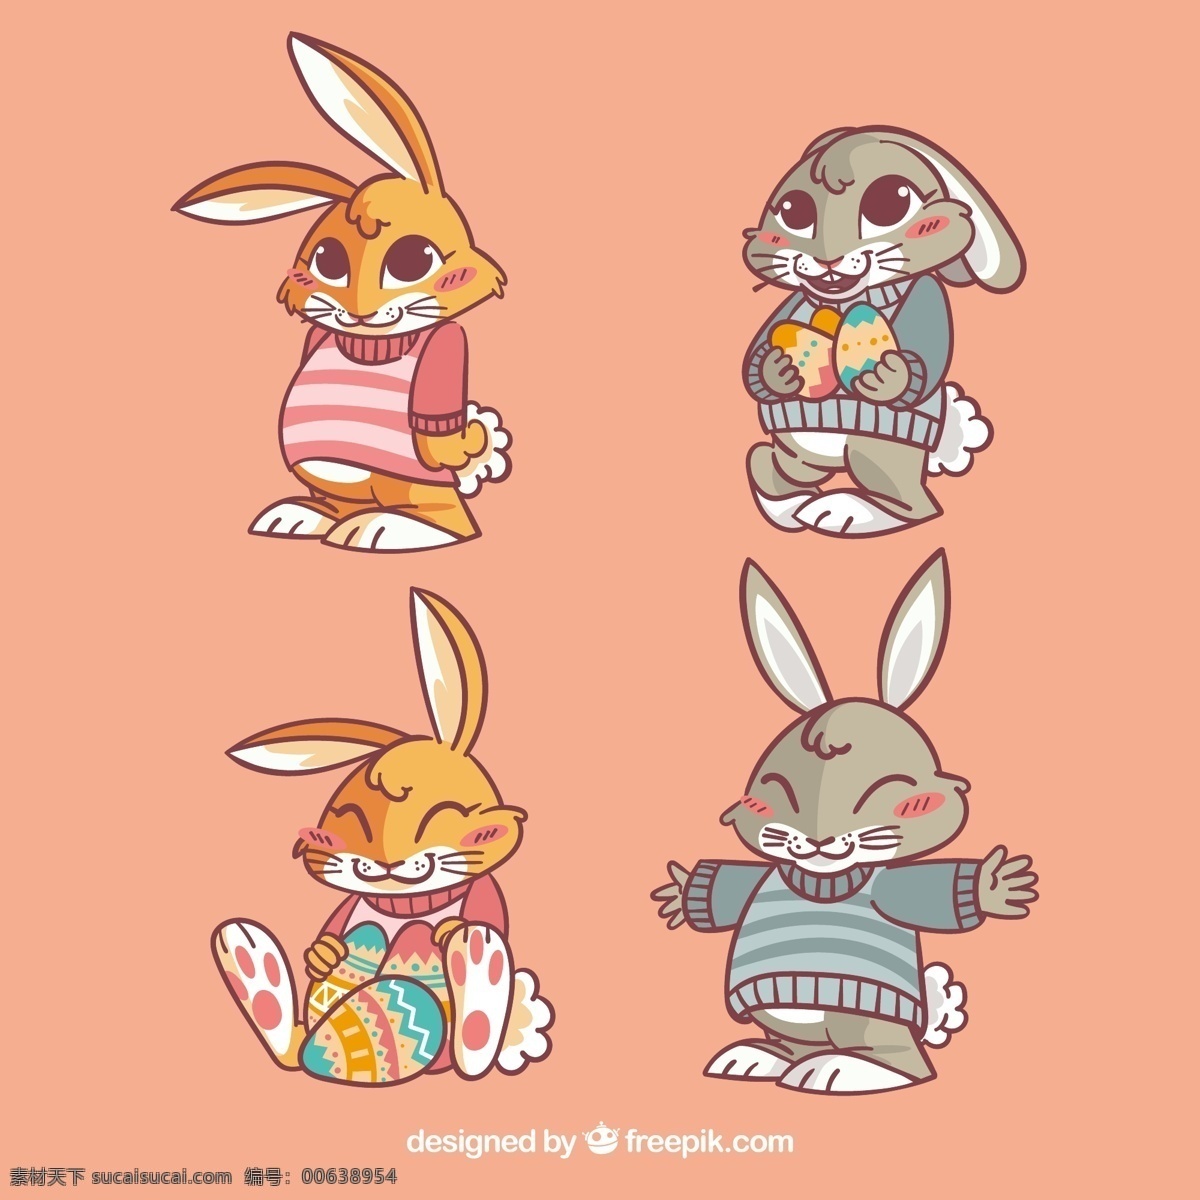 组 憨厚 复活节 可爱 兔子 元素 复活节素材 创意 简约 欧式 节日素材 节日元素 小动物